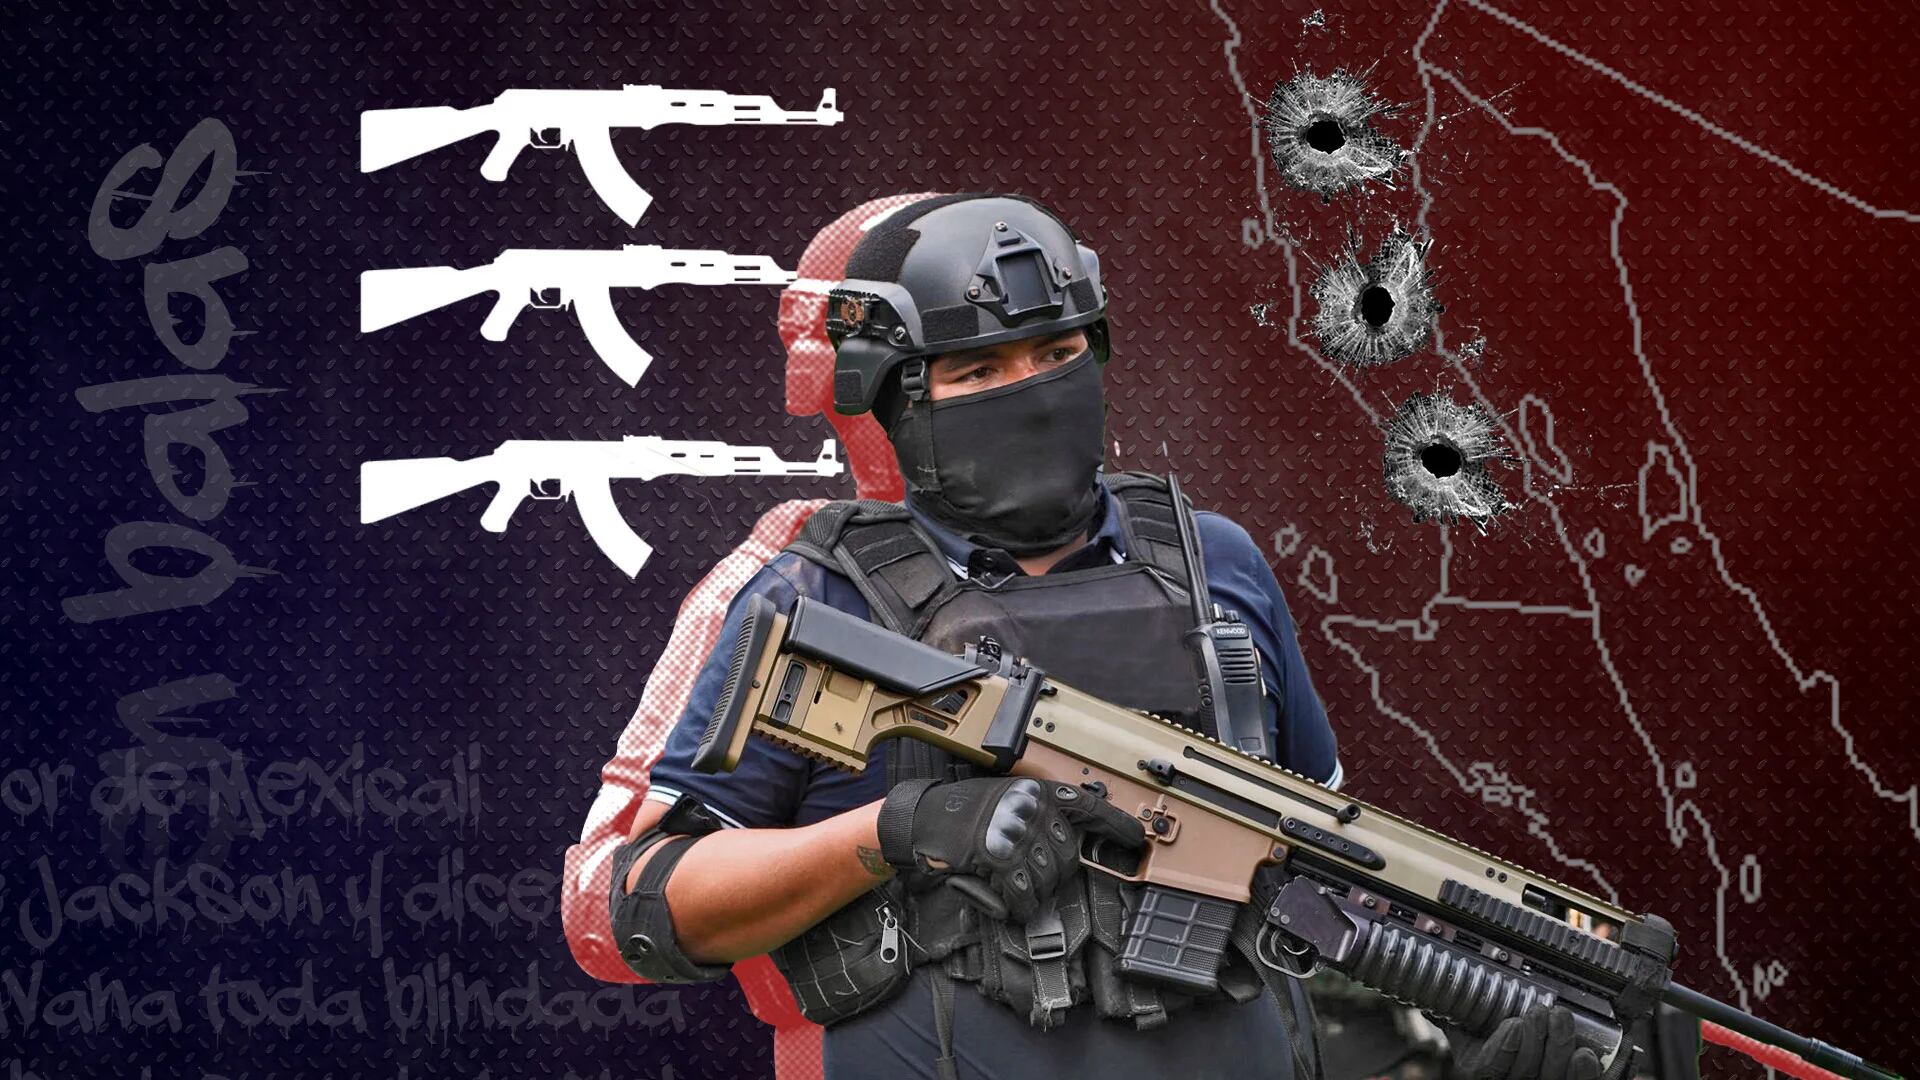 El narcocorrido que narra las operaciones de “Los Rusos” del Cártel de Sinaloa en Baja California: “Temor no hay”